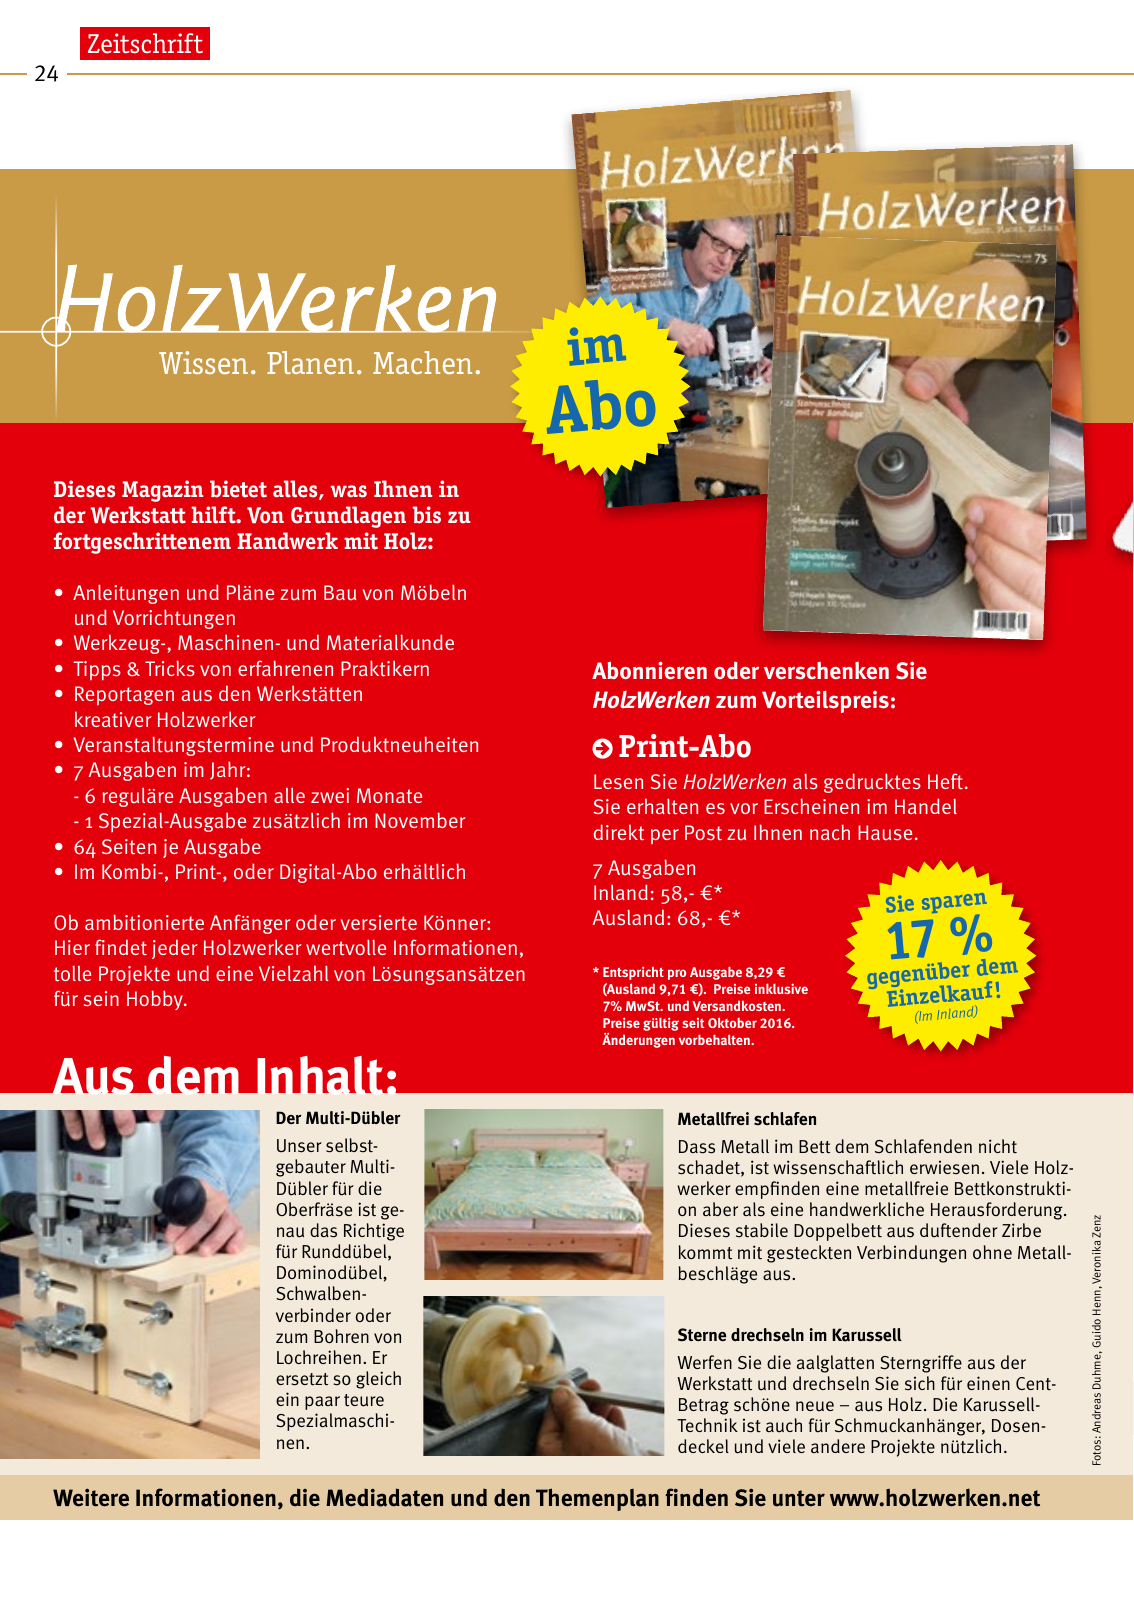 Vorschau HolzWerken Katalog 2019 Seite 24